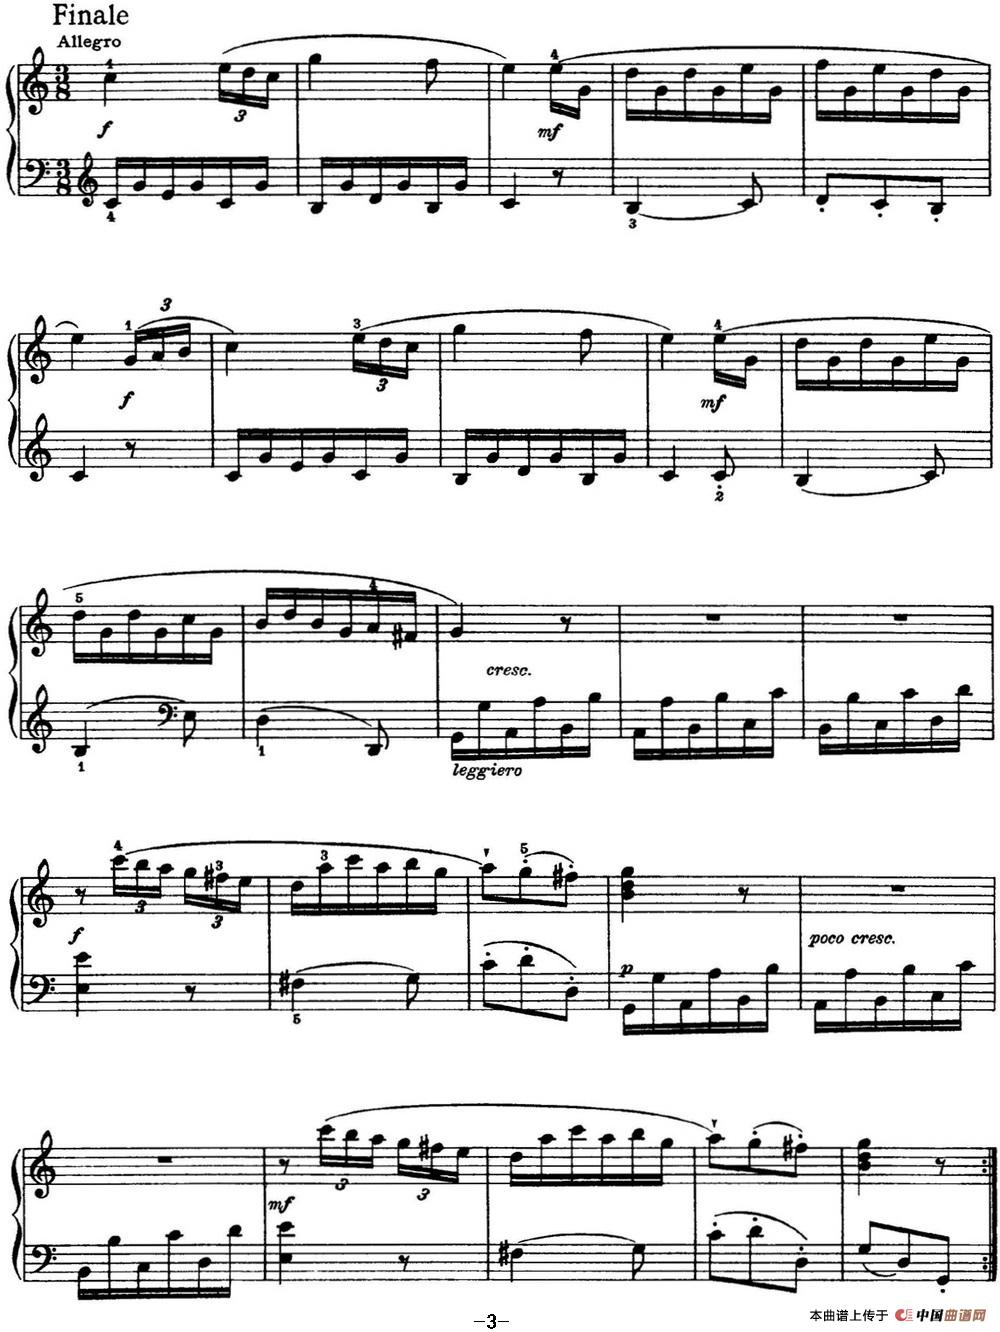 《海顿 钢琴奏鸣曲 Hob XVI 7 Divertimento C major》钢琴曲谱图分享